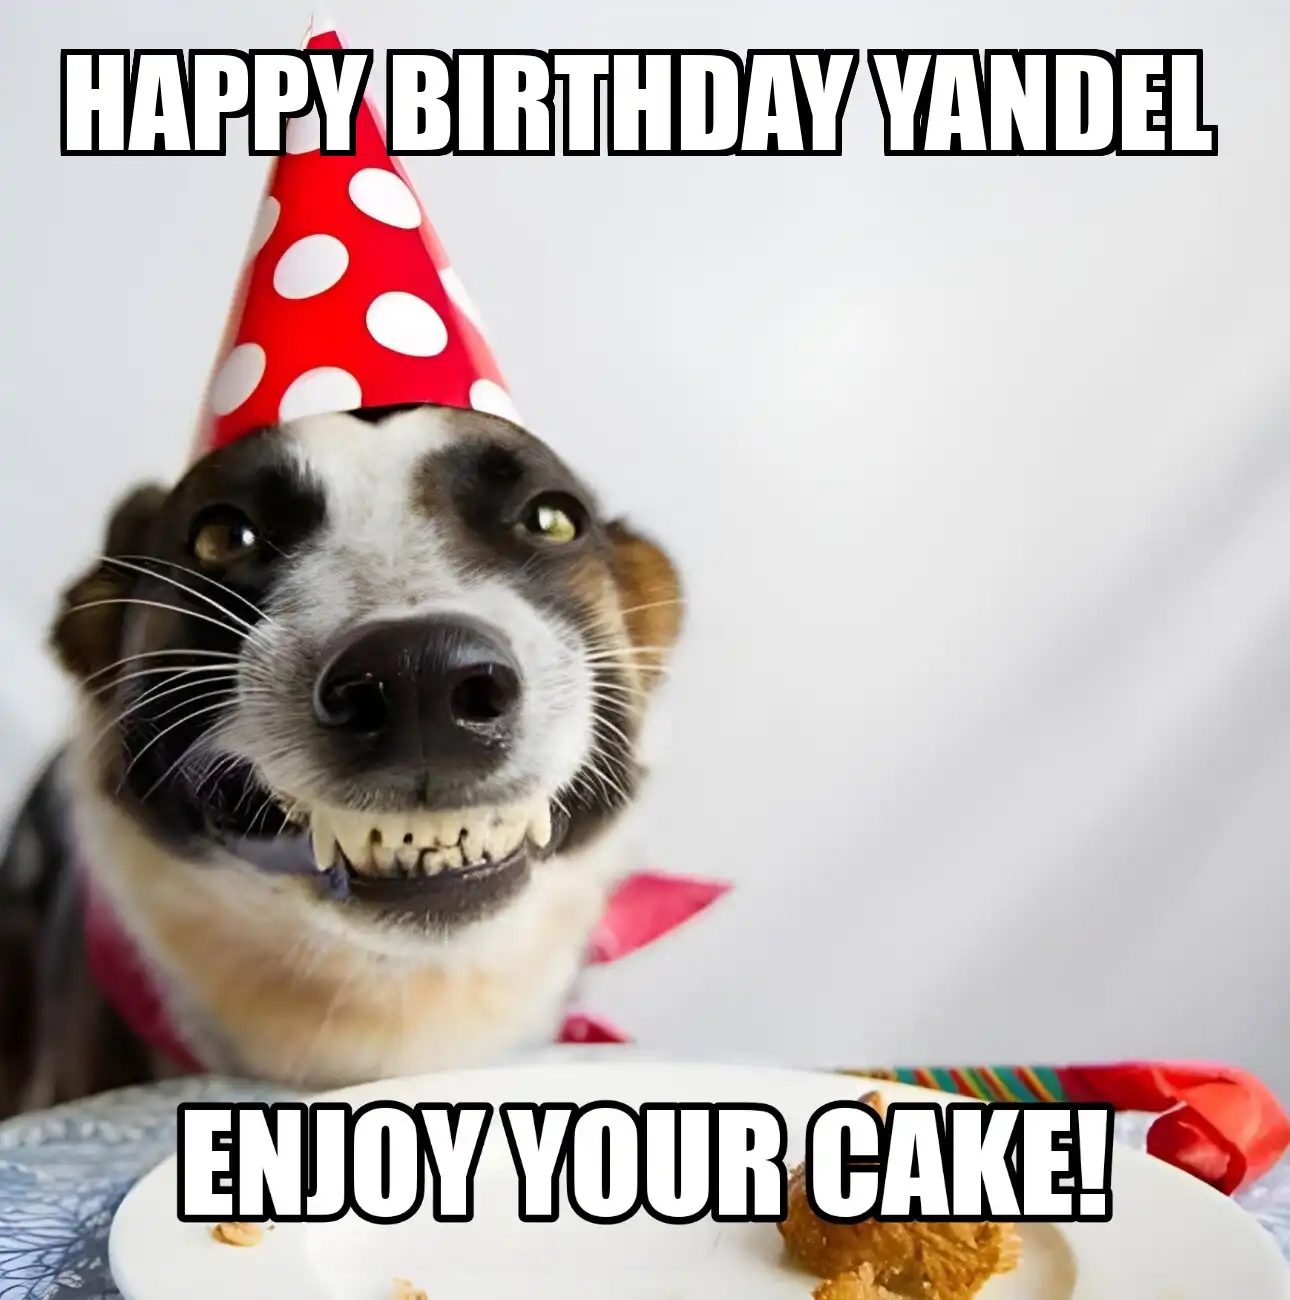 Happy Birthday Yandel Enjoy Your Cake Dog Meme